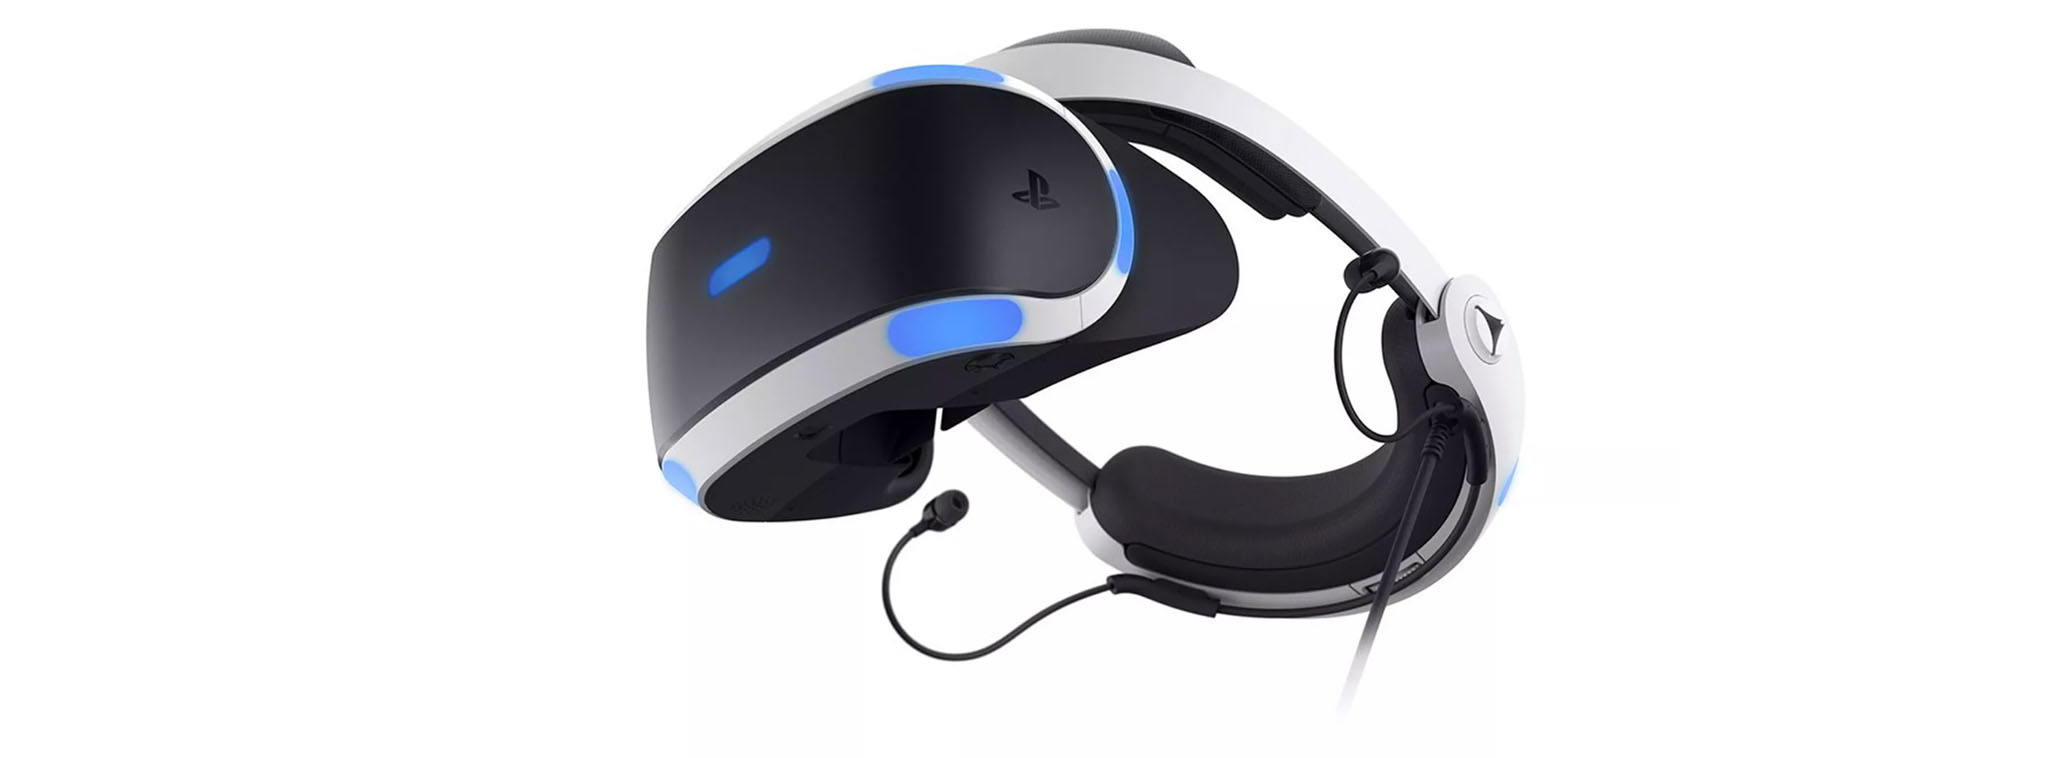 Sony ra mắt Playstation VR phiên bản mới: Gọn hơn, mạnh hơn, hỗ trợ HDR passthough, giá không đổi